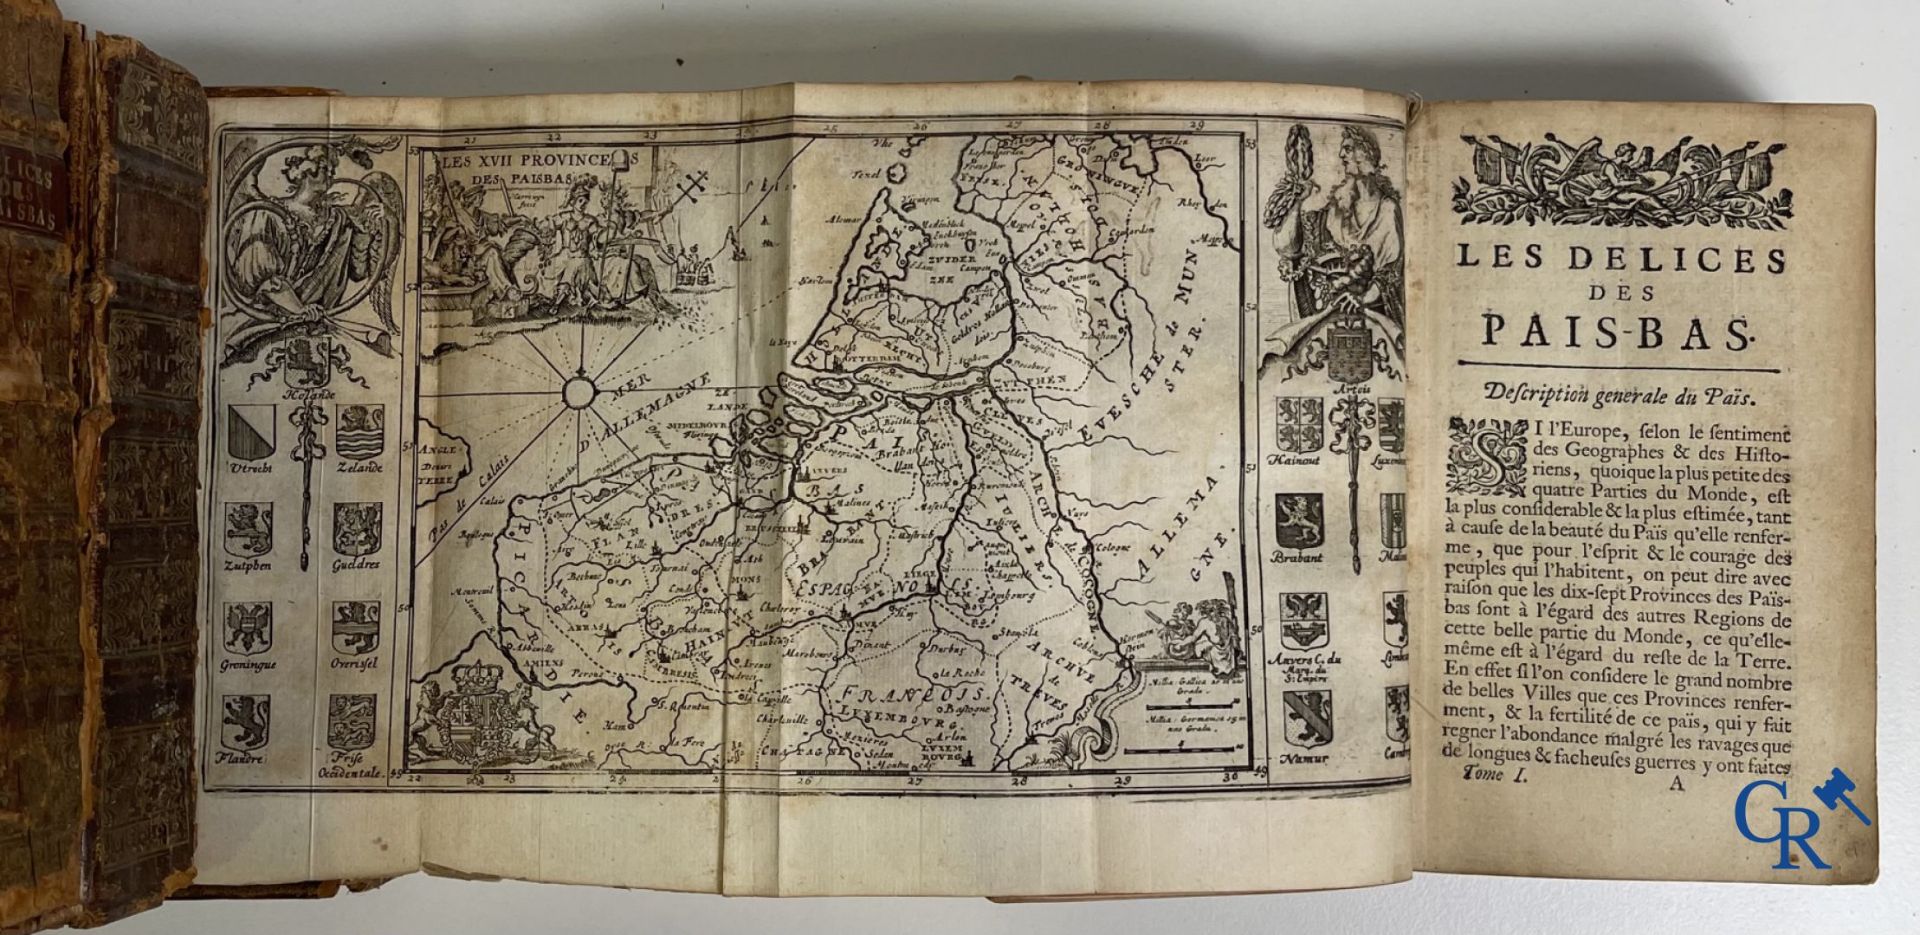 Early printed books: Histoire générale des Pais-Bas, 1720 Chez François Foppens à Brusselle. - Image 19 of 23